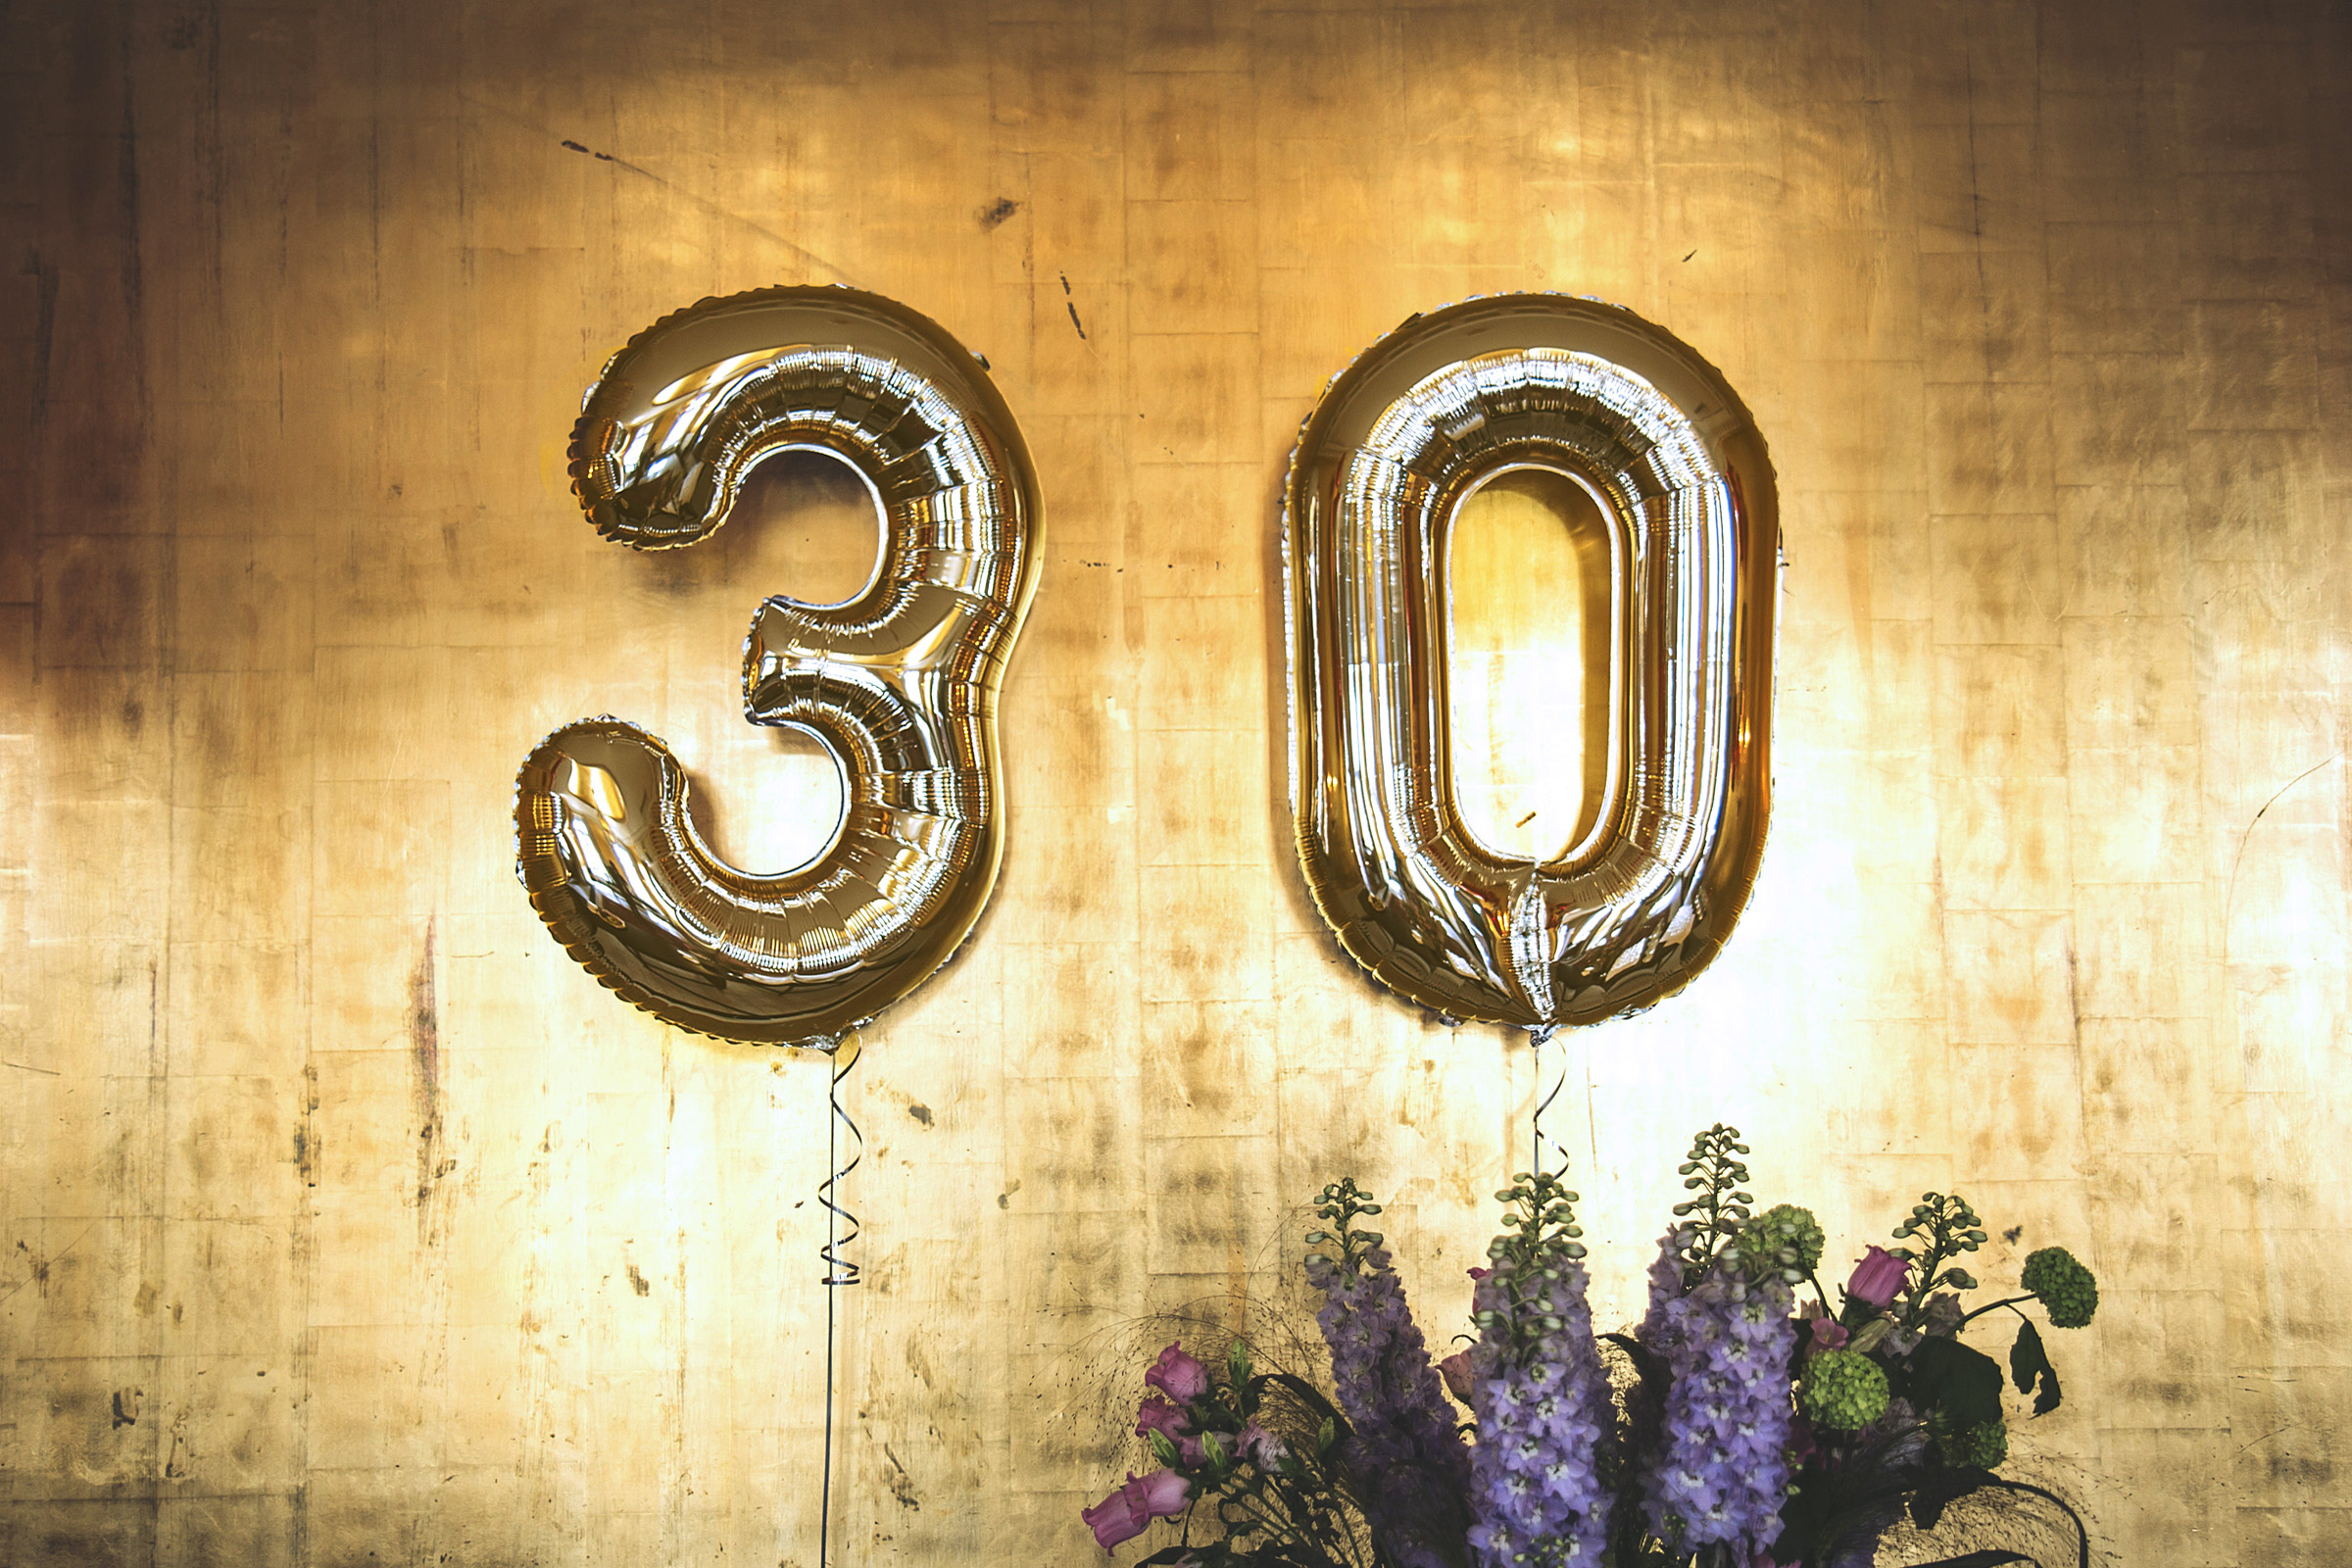 Déco anniversaire 30 ans : conseils et idées utiles pour organiser une fête  inoubliable